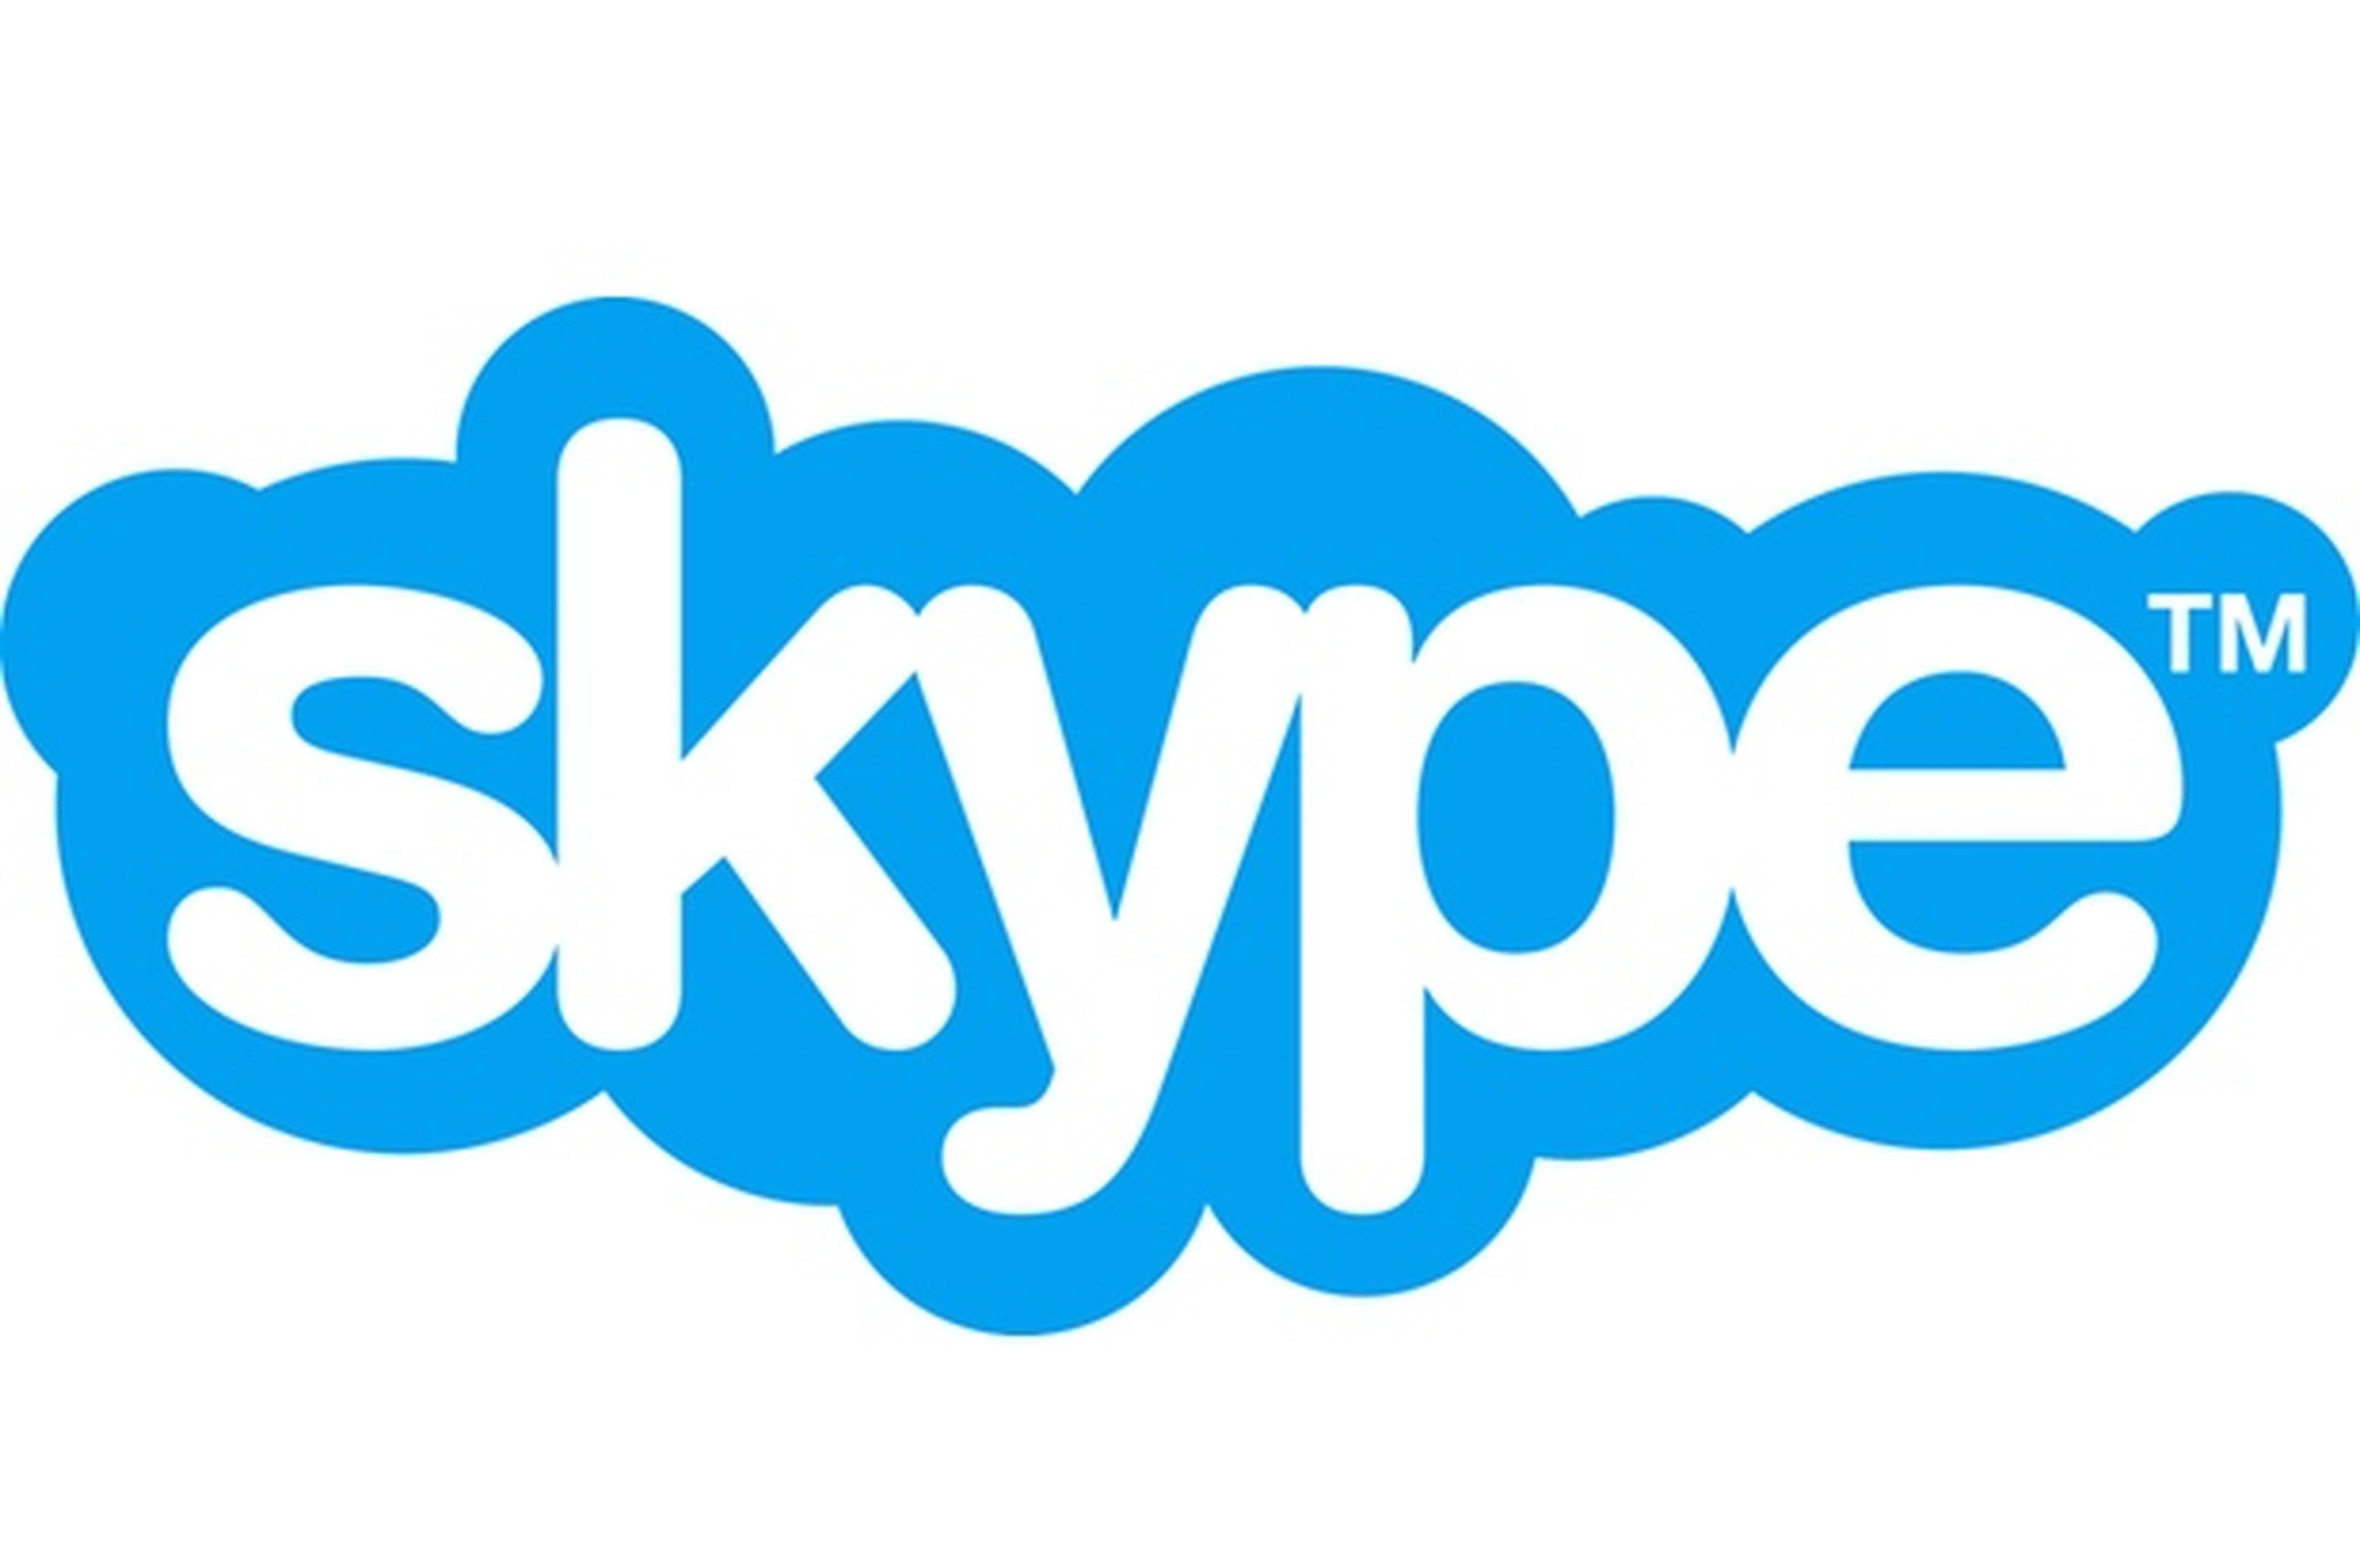 Registro e instalación en Skype